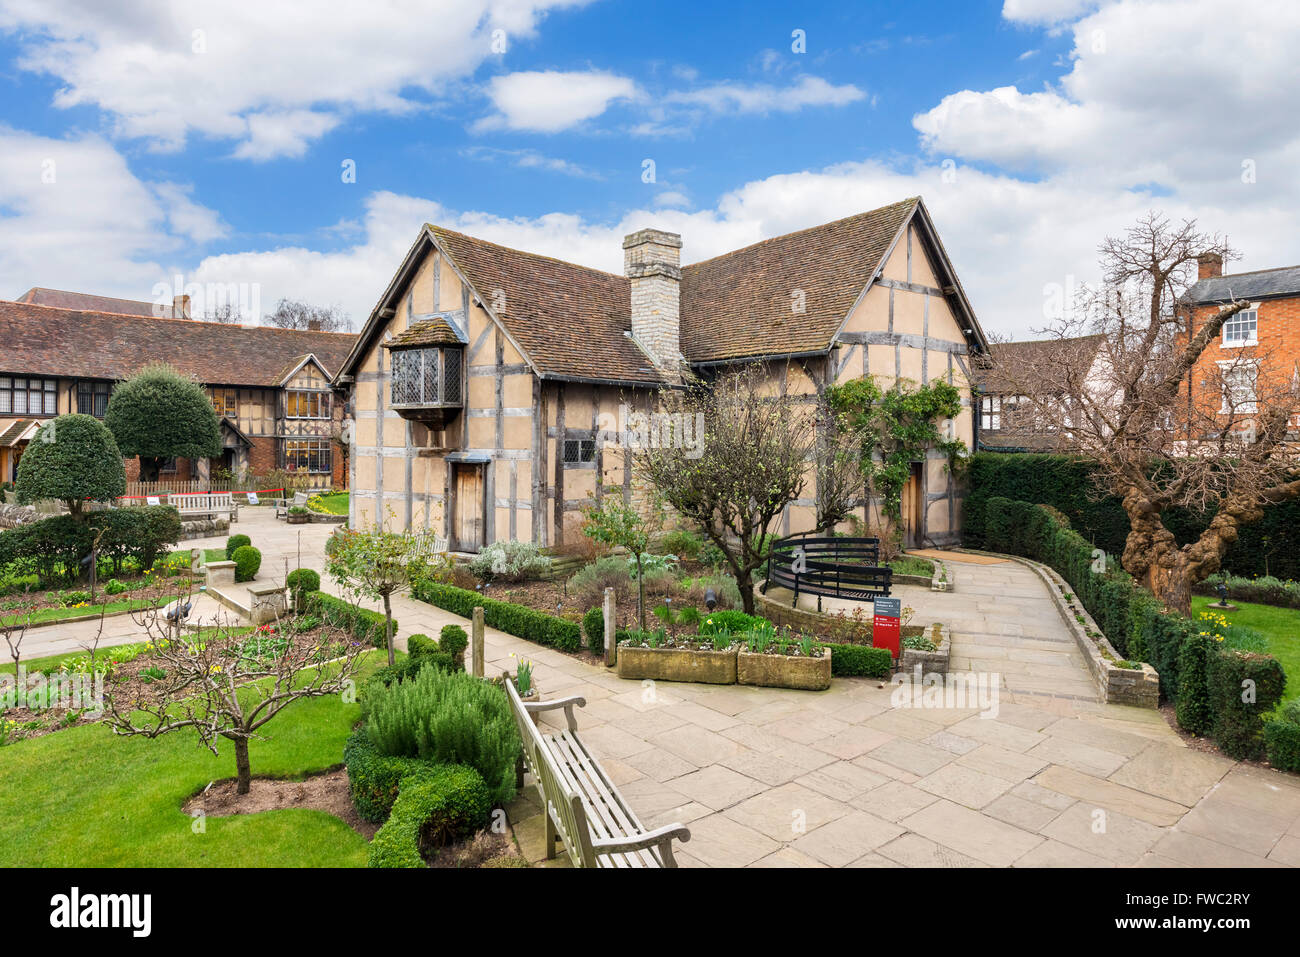 Le lieu de naissance de Shakespeare, Stratford-upon-Avon, England, UK Banque D'Images